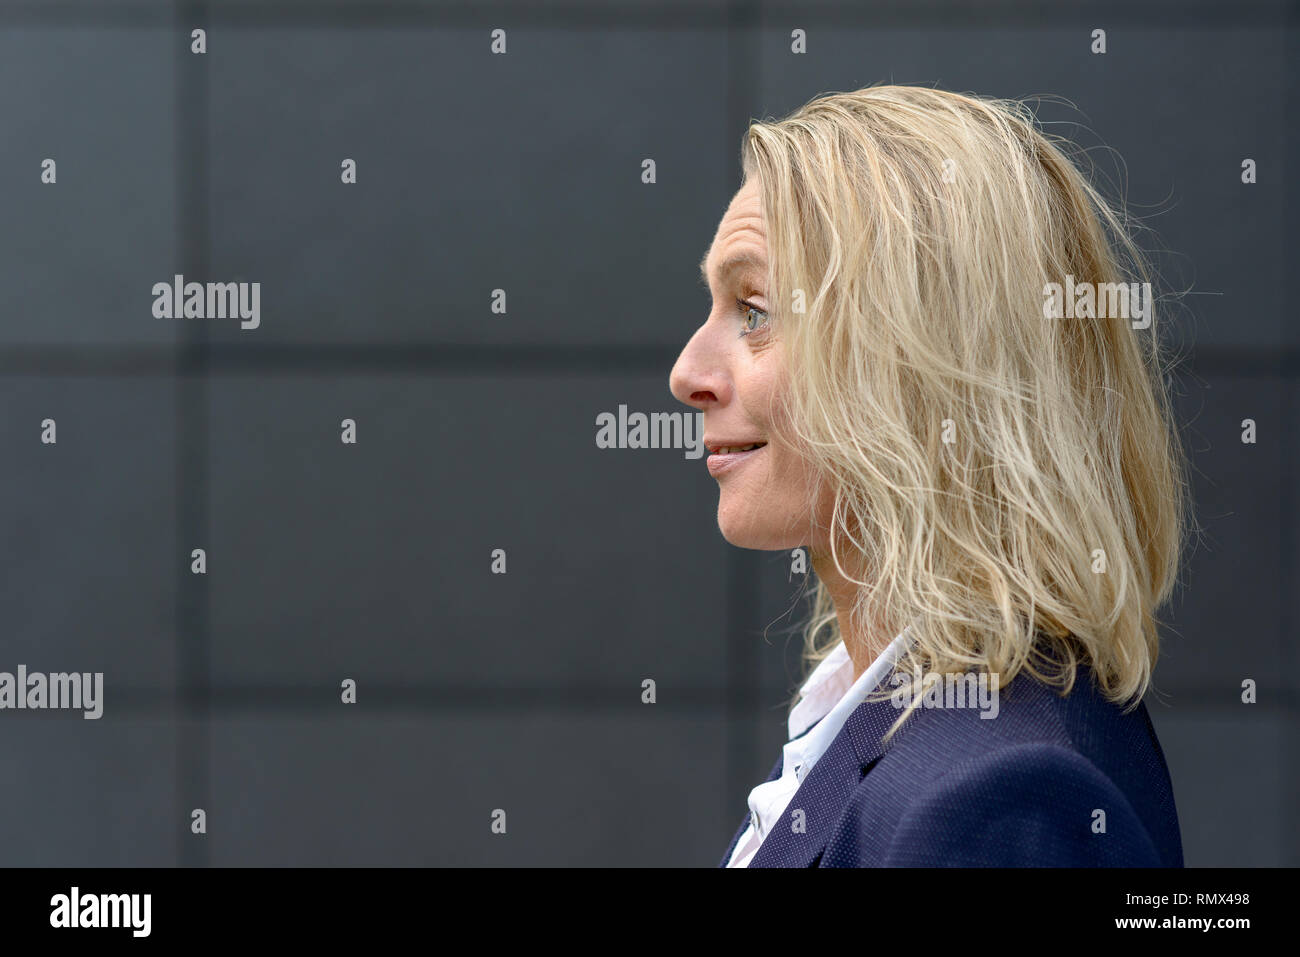 Head shot Profil d'une femme blonde surpris avec les cheveux ébouriffés de sourire et élever ses sourcils avec copie espace sur un mur gris foncé Banque D'Images